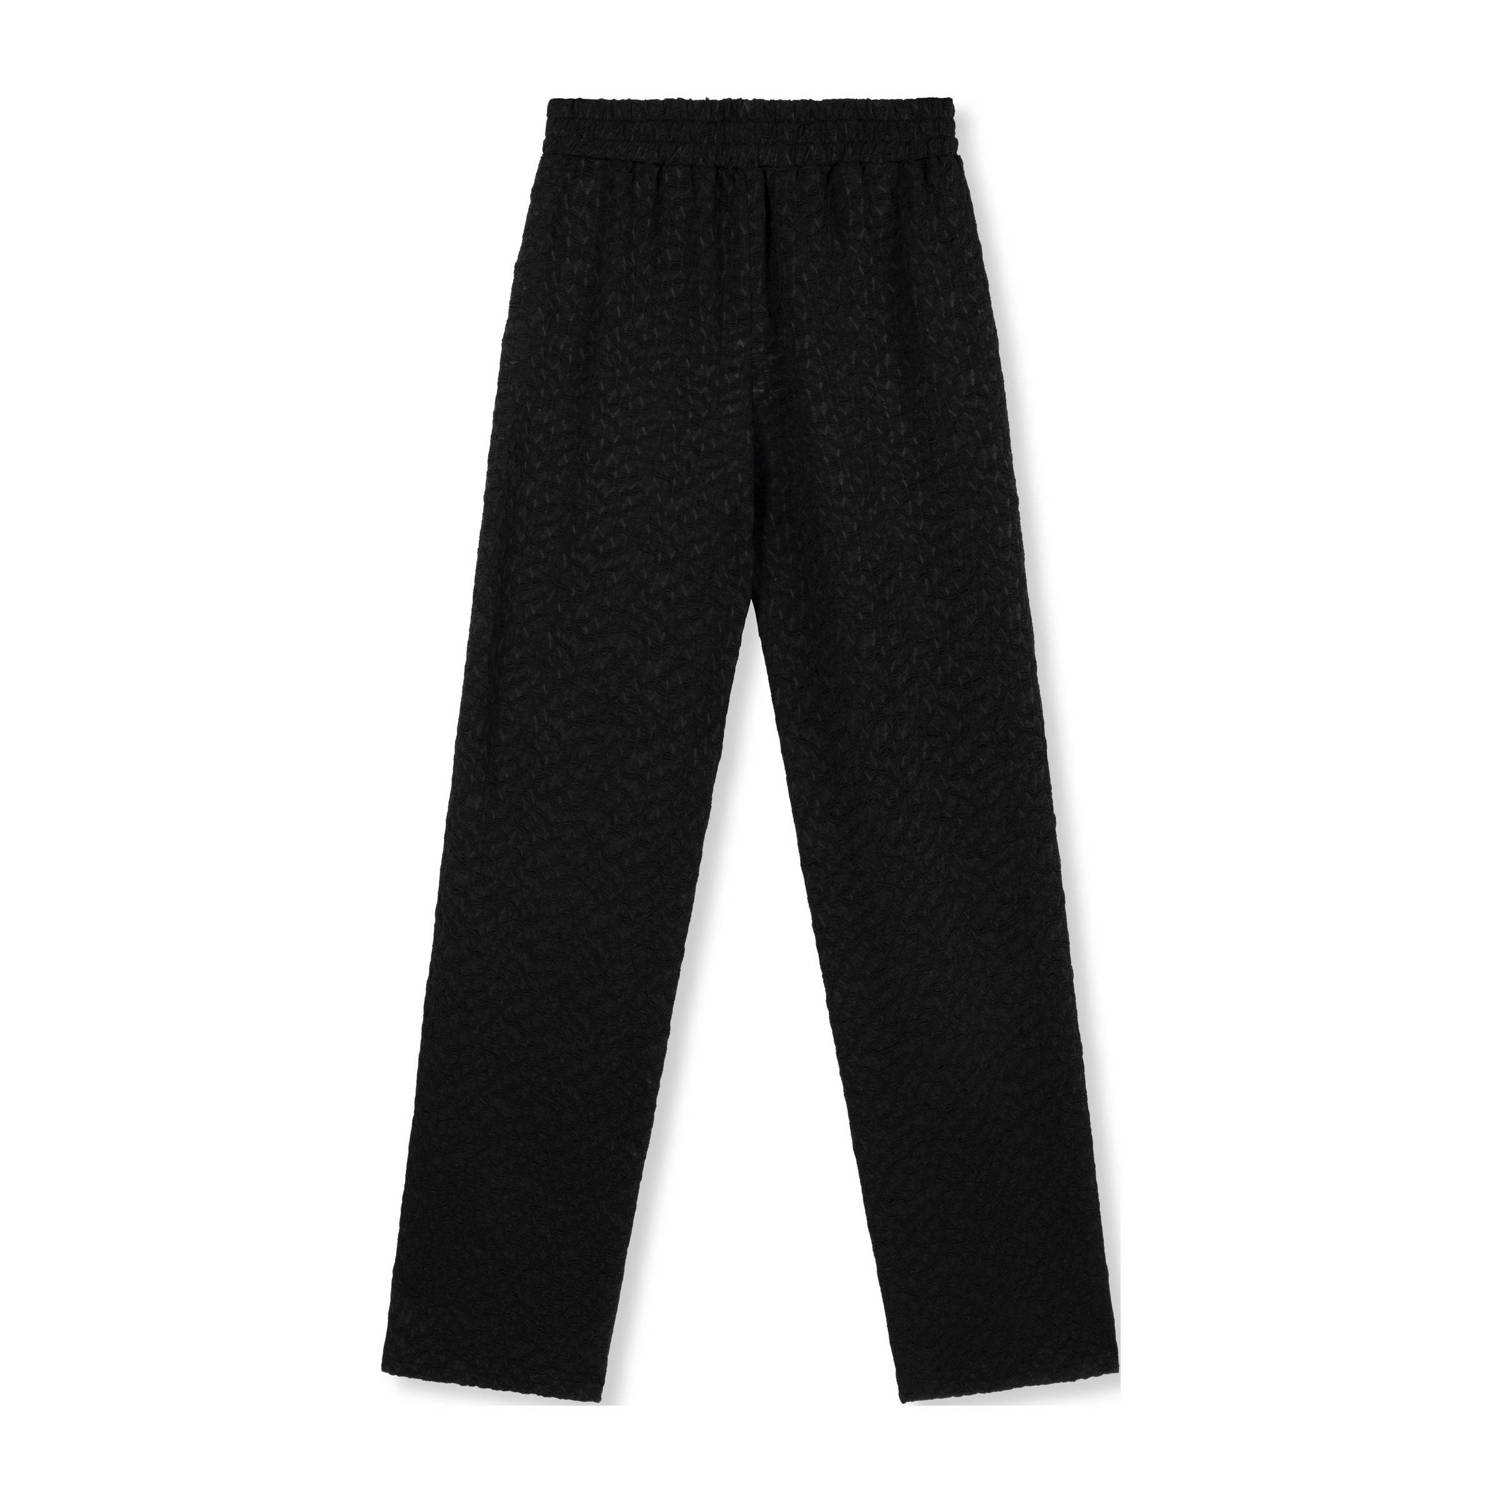 Refined Department high waist wide leg pantalon Nova met ingebreid patroon en textuur zwart